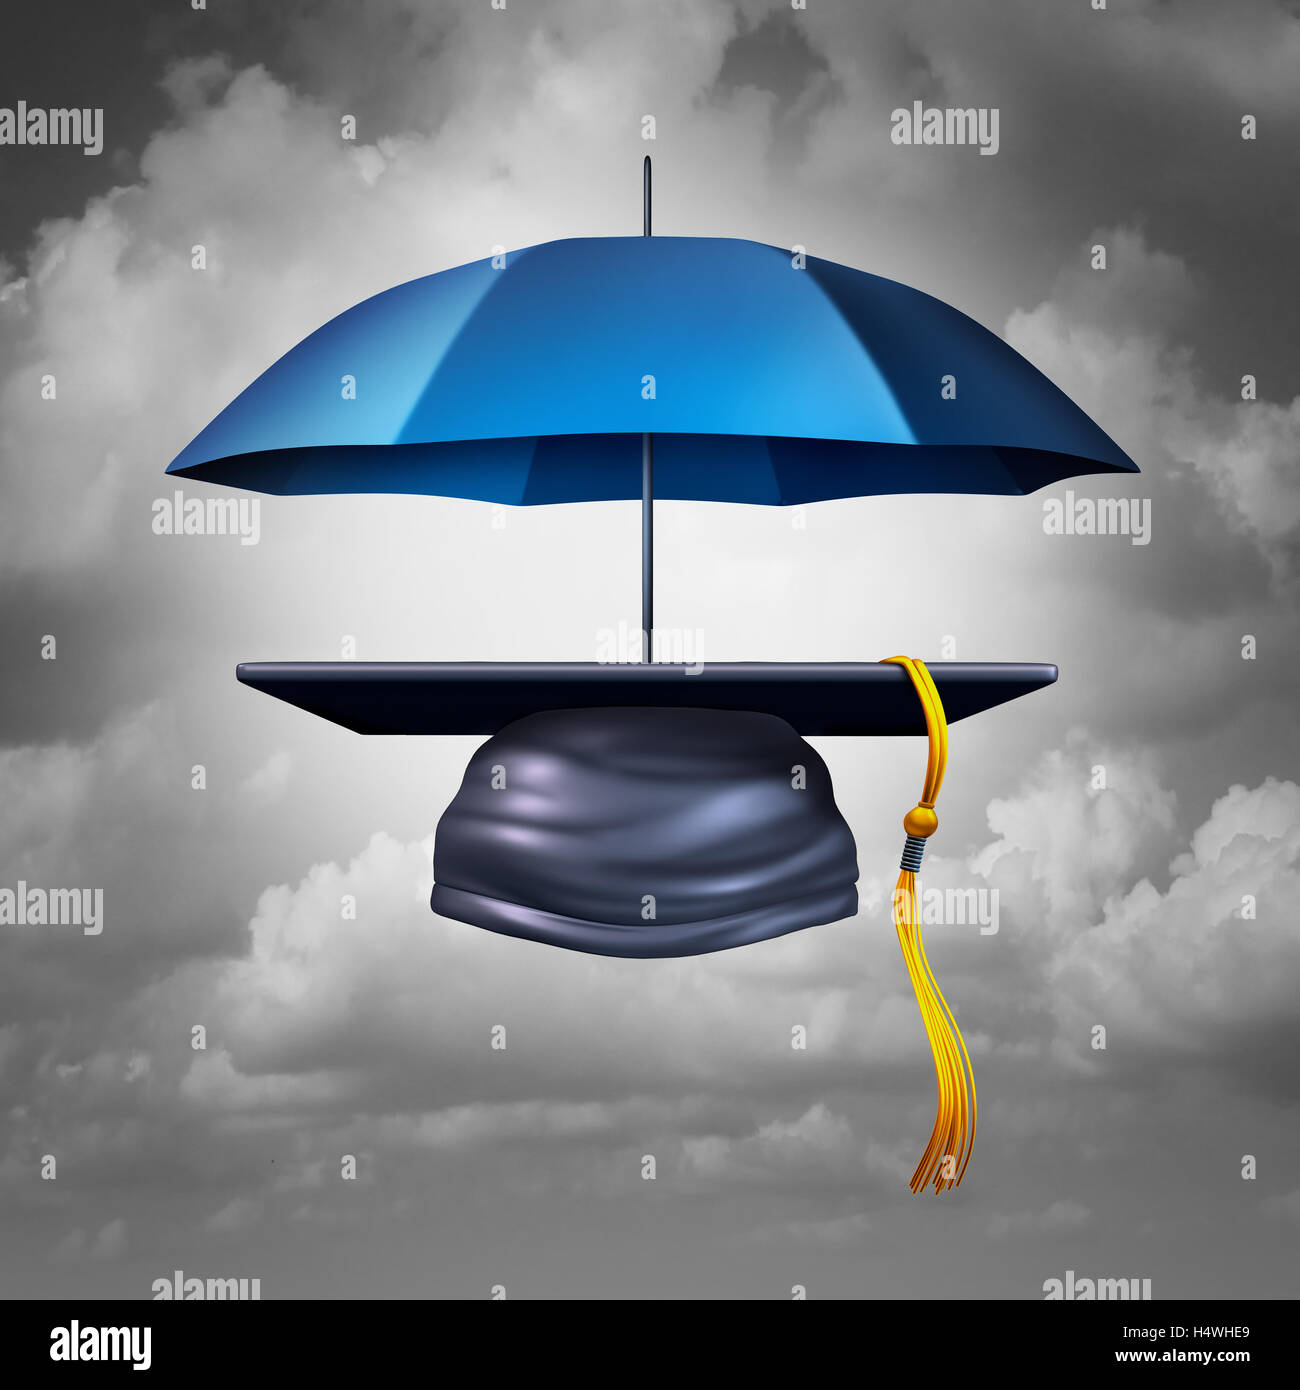 Protección de la educación y la enseñanza de la vivienda para la alfabetización y el aprendizaje como un sombrero de graduación o mortero cap protegida por un paraguas como símbolo de protección académica y brindar seguridad a los alumnos como una ilustración 3D. Foto de stock